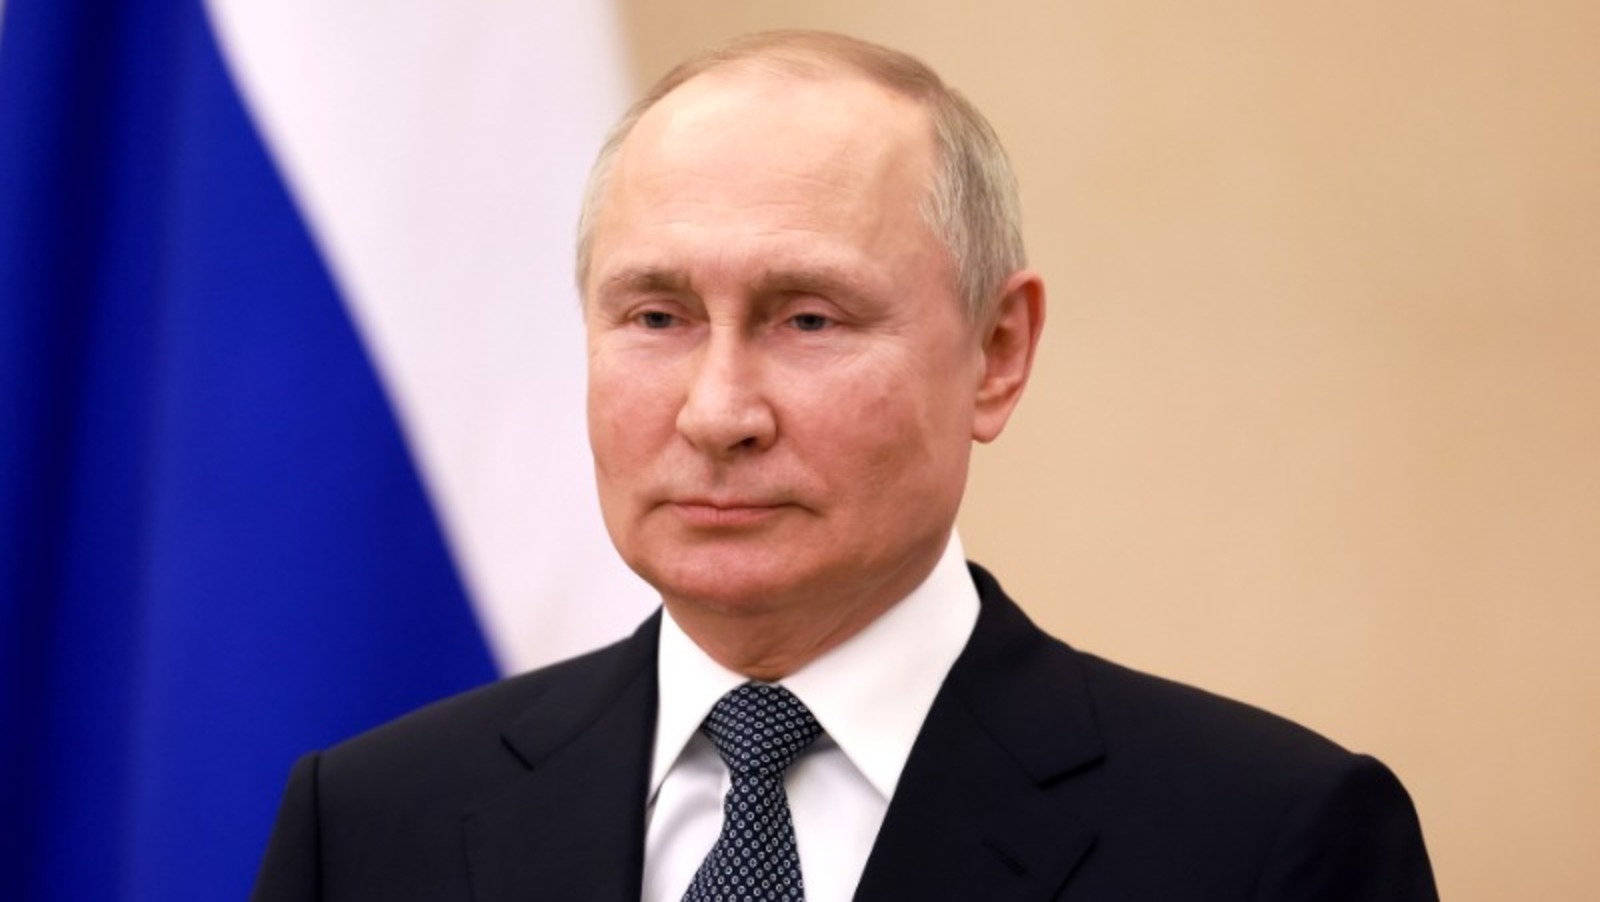 Путин заявил о положительной динамике спецоперации